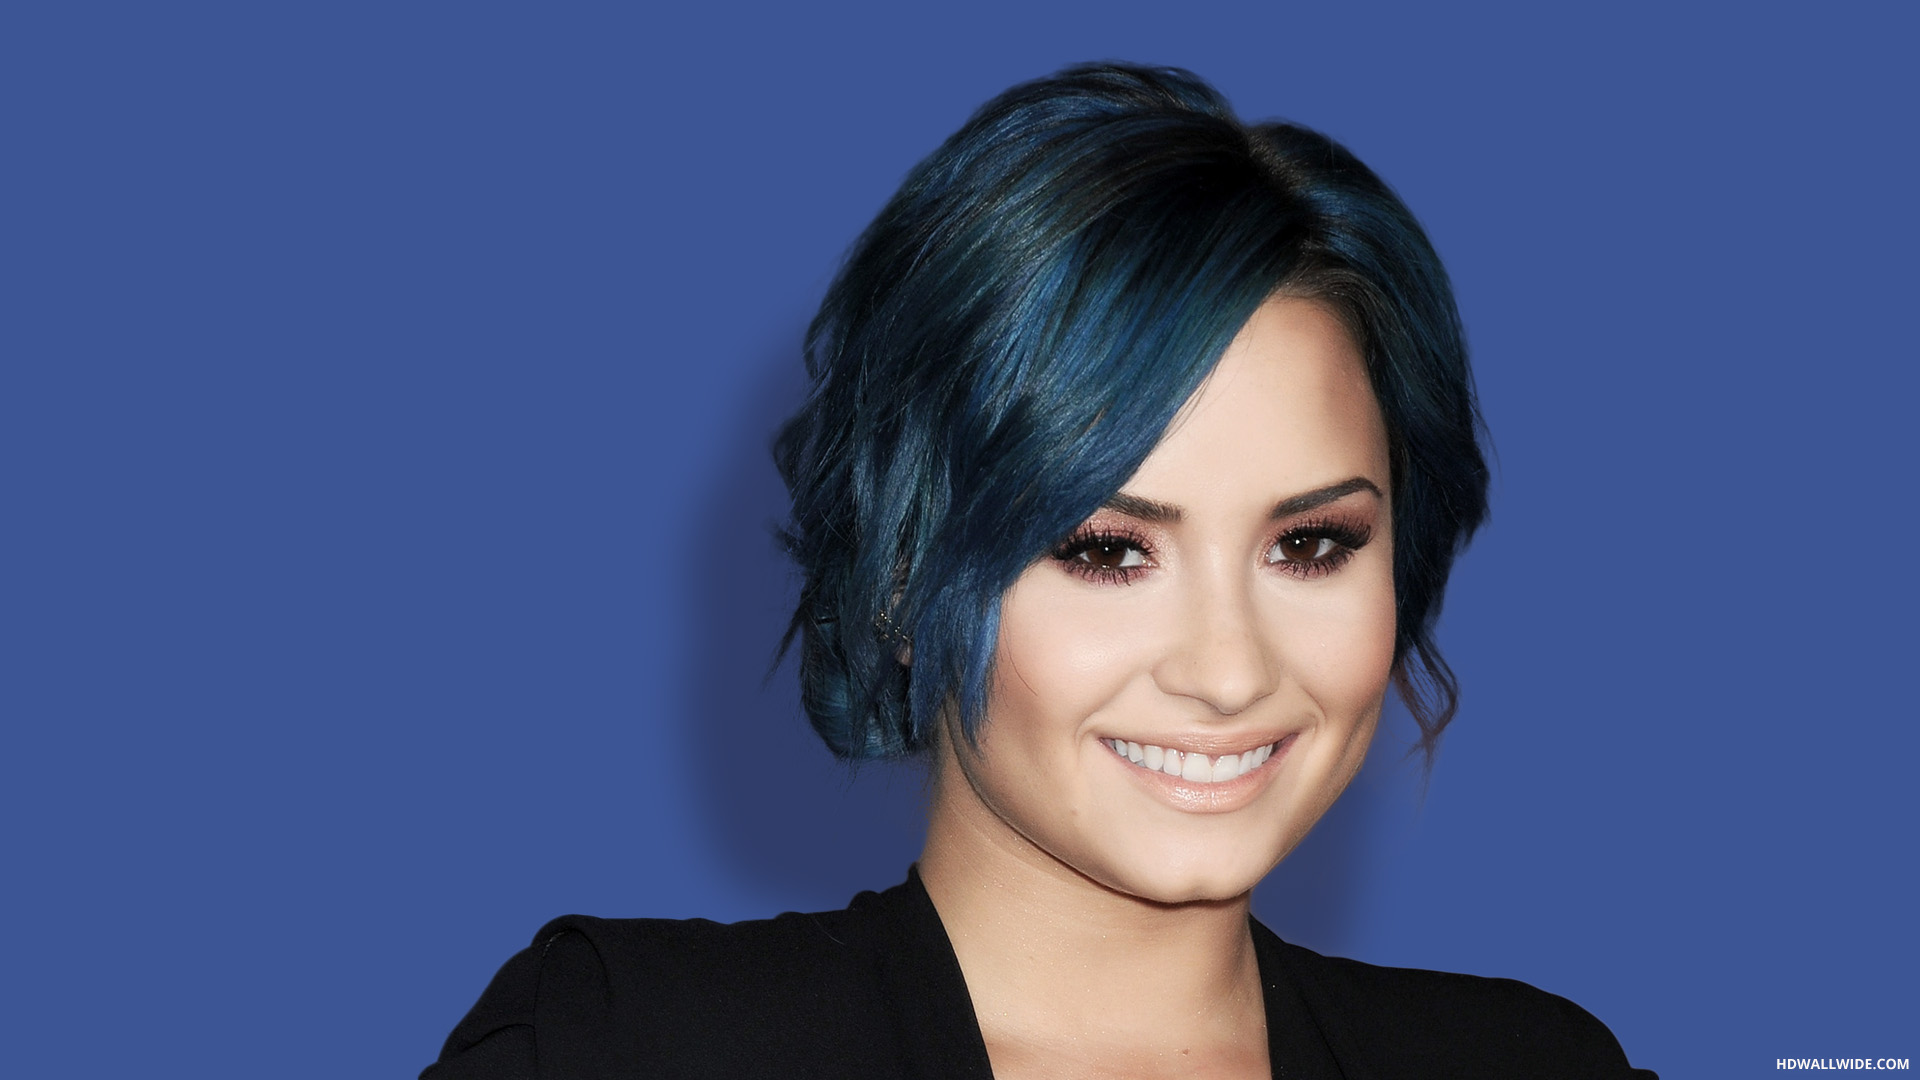 Demi Lovato HD Wallpaper 1080p Blue Upload At October